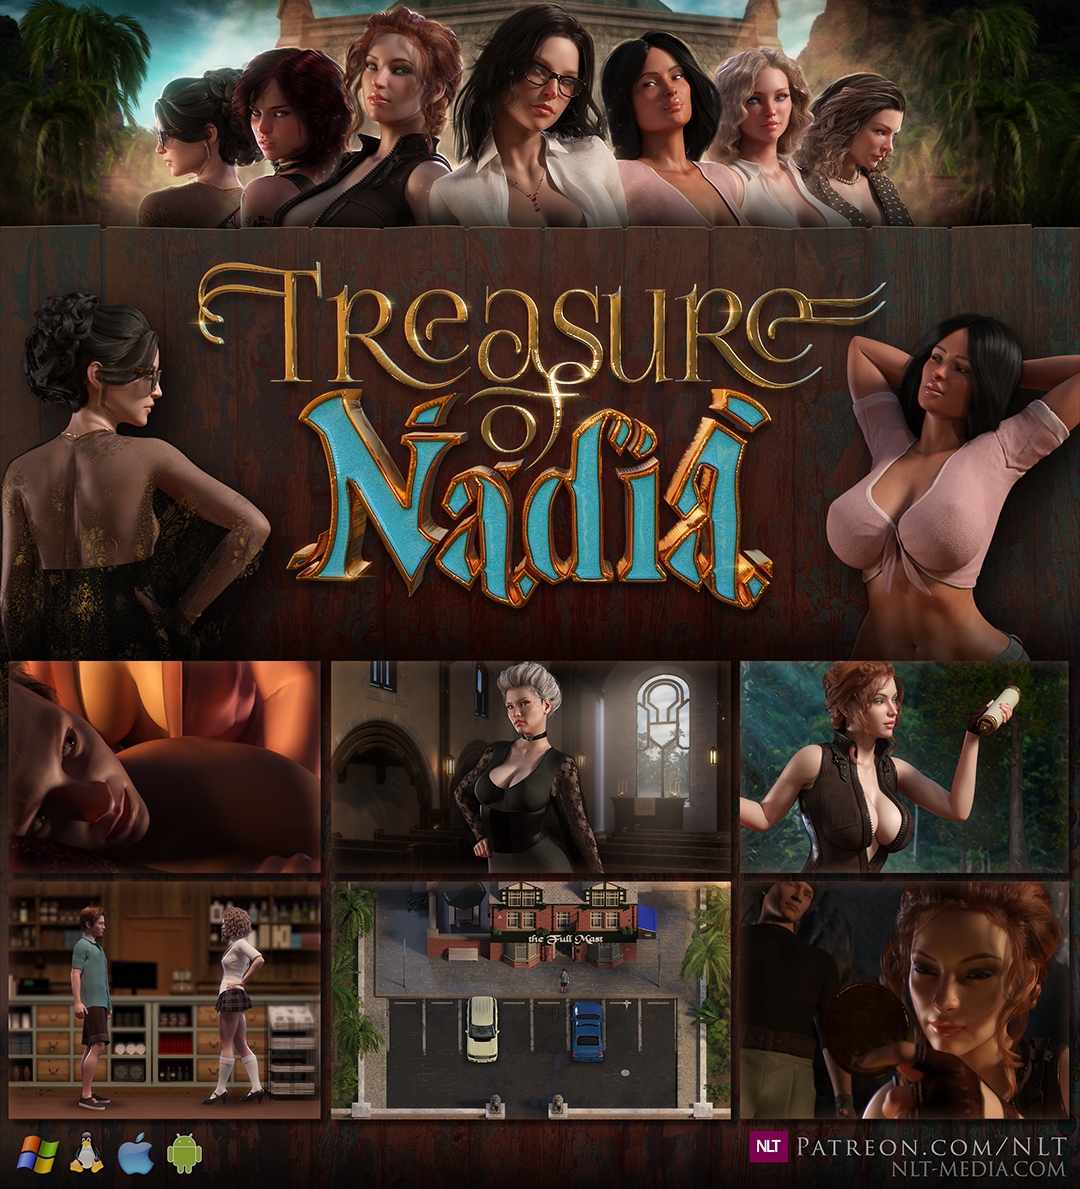 Treasures of nadia full game